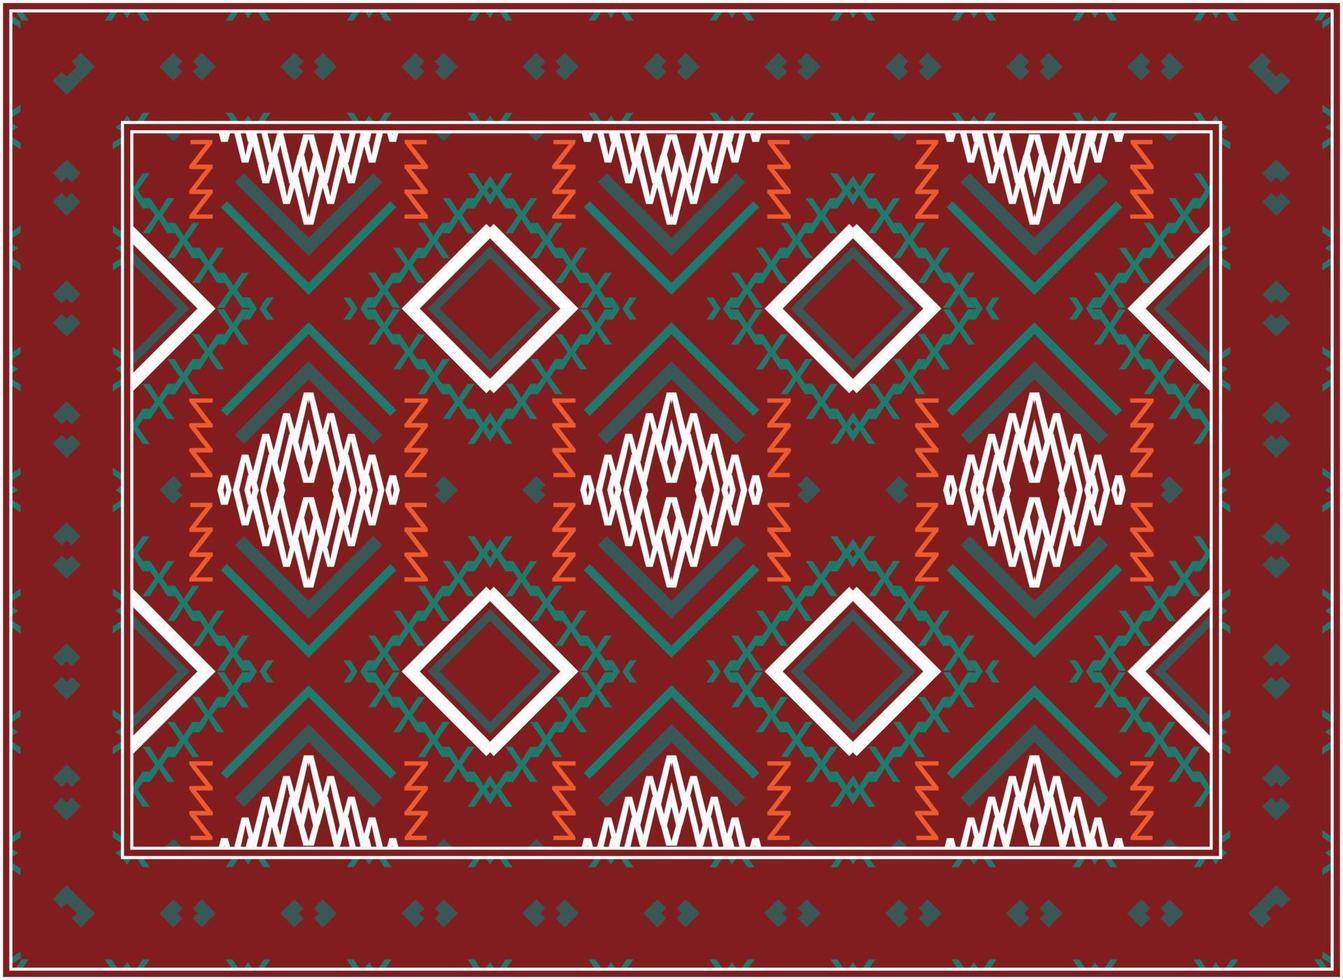 modern Perzisch tapijt textuur, motief etnisch naadloos patroon modern Perzisch tapijt, Afrikaanse etnisch aztec stijl ontwerp voor afdrukken kleding stof tapijten, handdoeken, zakdoeken, sjaals tapijt, vector